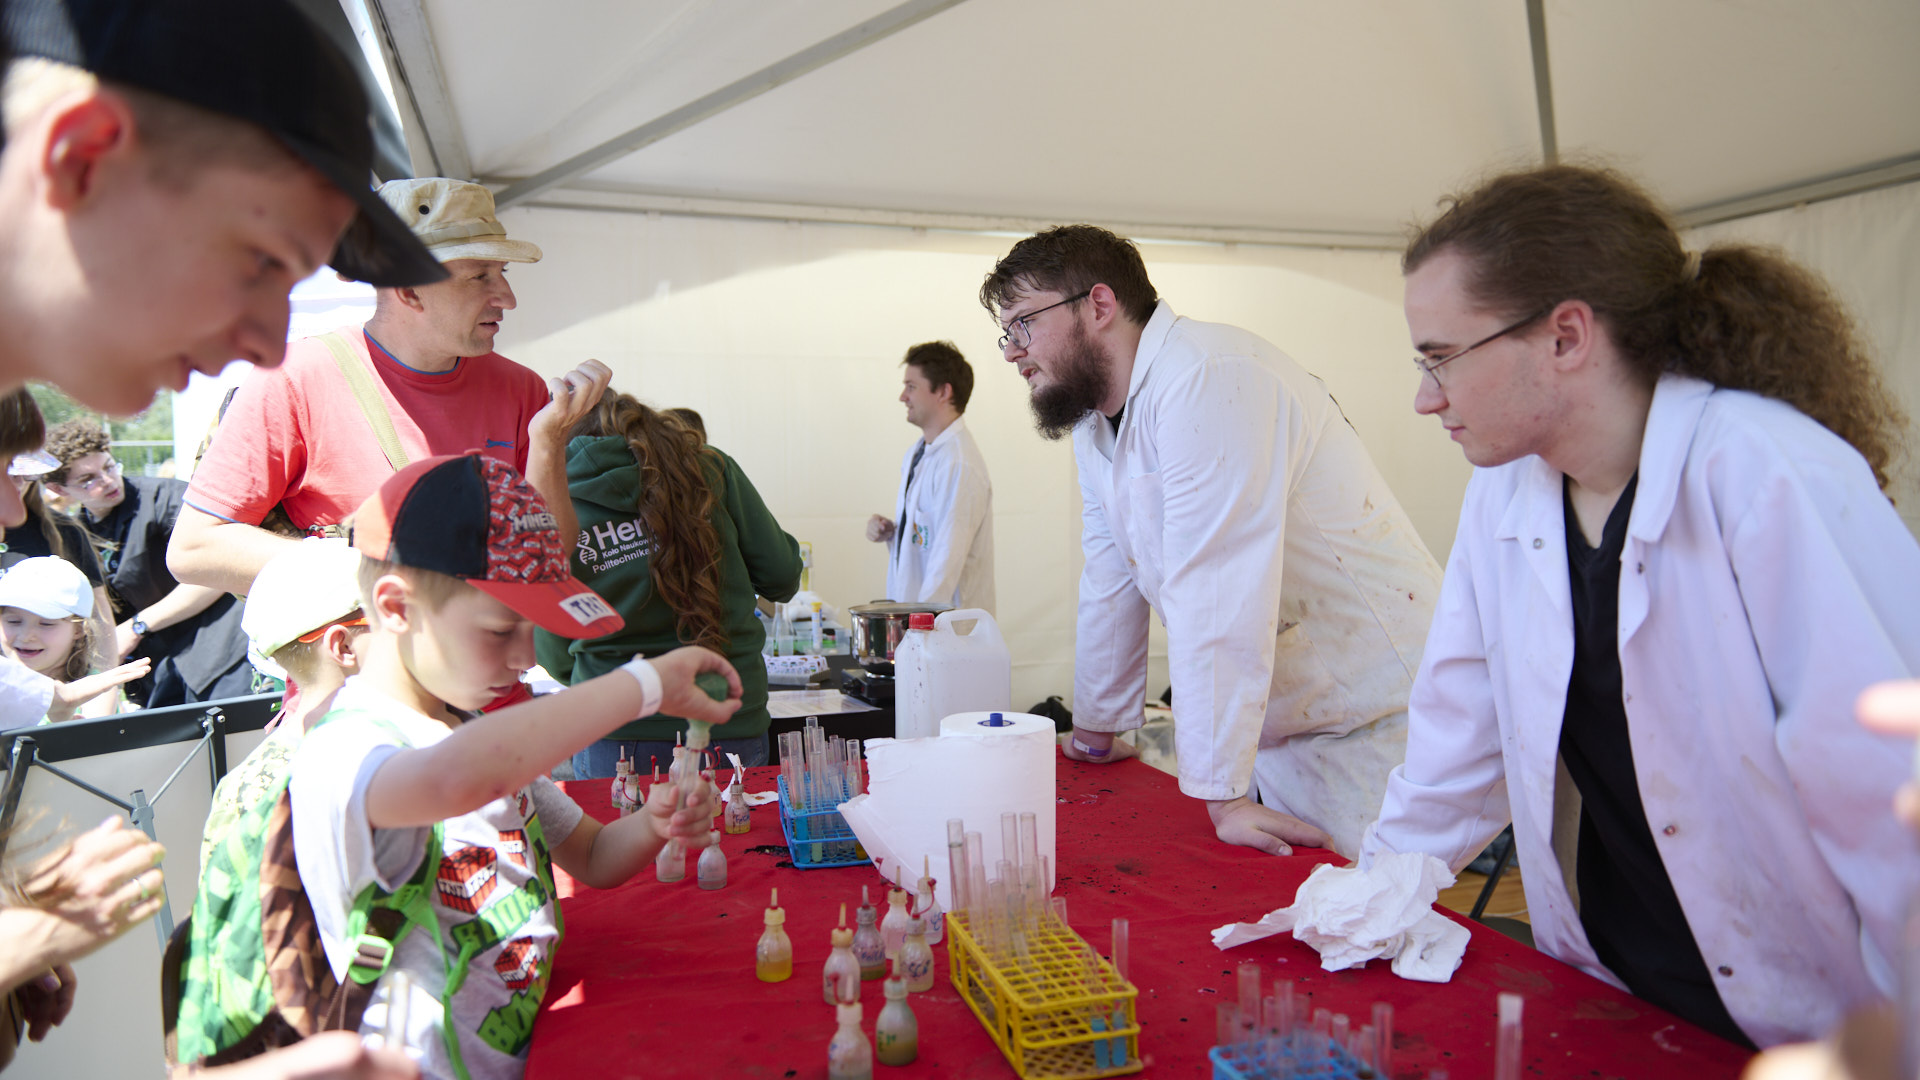 Na zdjęciu grupa ludzi przy stanowisku z eksperymentami chemicznymi